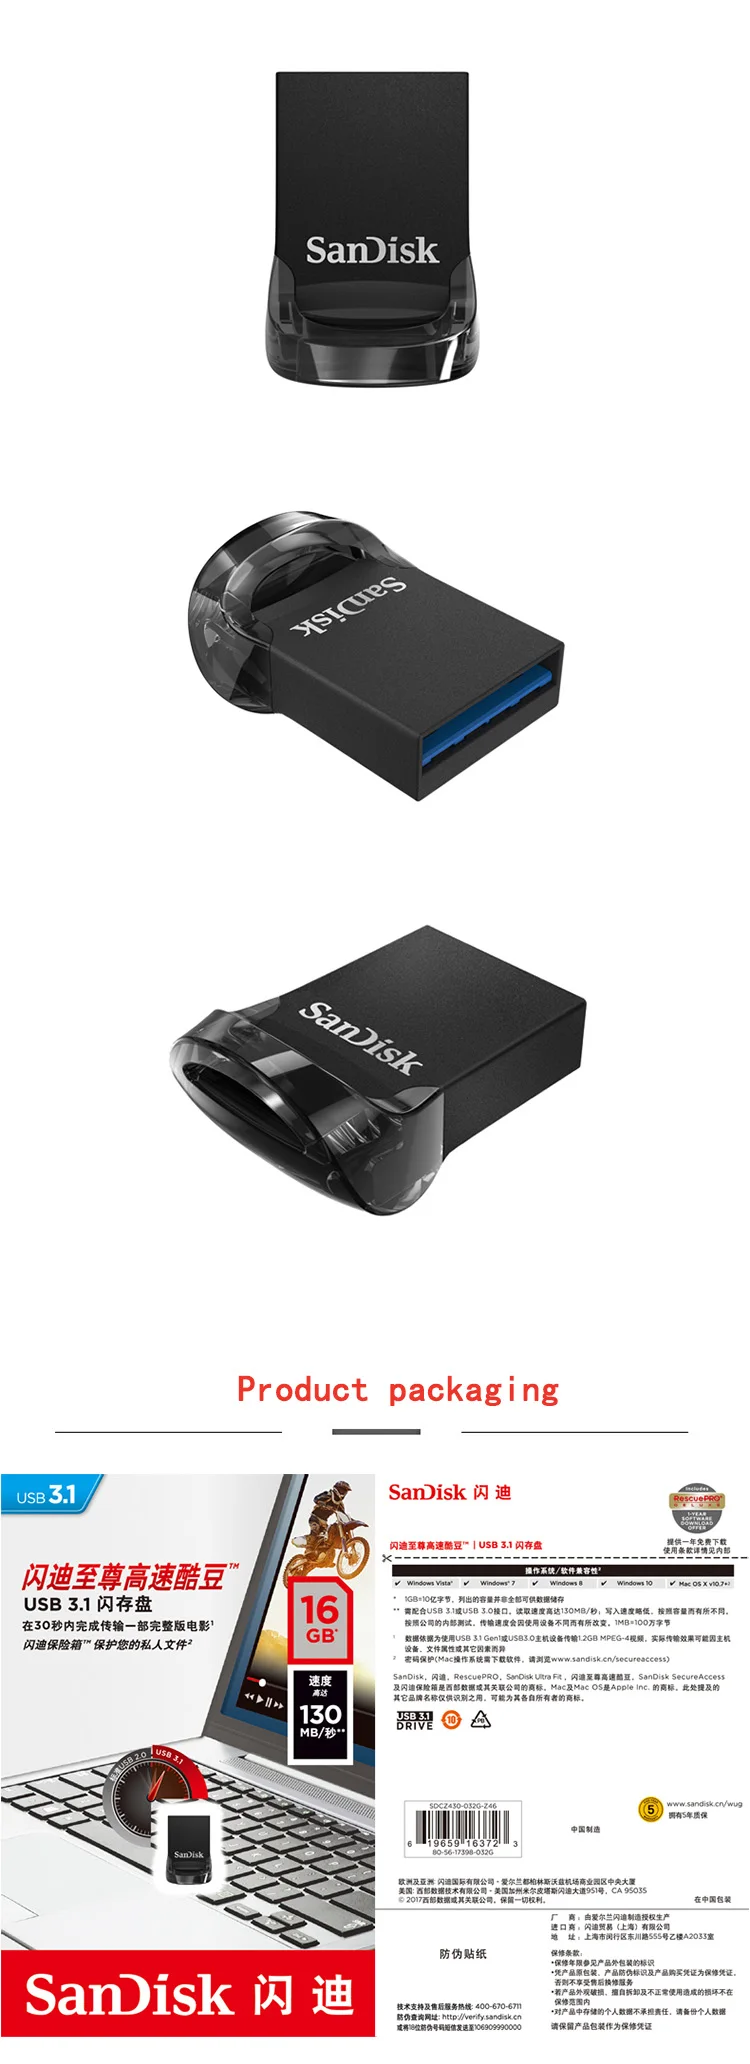 Двойной Флеш-накопитель SanDisk CZ430 USB флэш-накопитель usb 3,1 высокая скорость передачи данных до 130 МБ/с. 128 ГБ оперативной памяти, 32 Гб встроенной памяти, флэш-накопитель 64 Гб оперативной памяти, 16 Гб встроенной памяти, usb-накопитель устройство для компьютеров, ноутбуков, планшетов